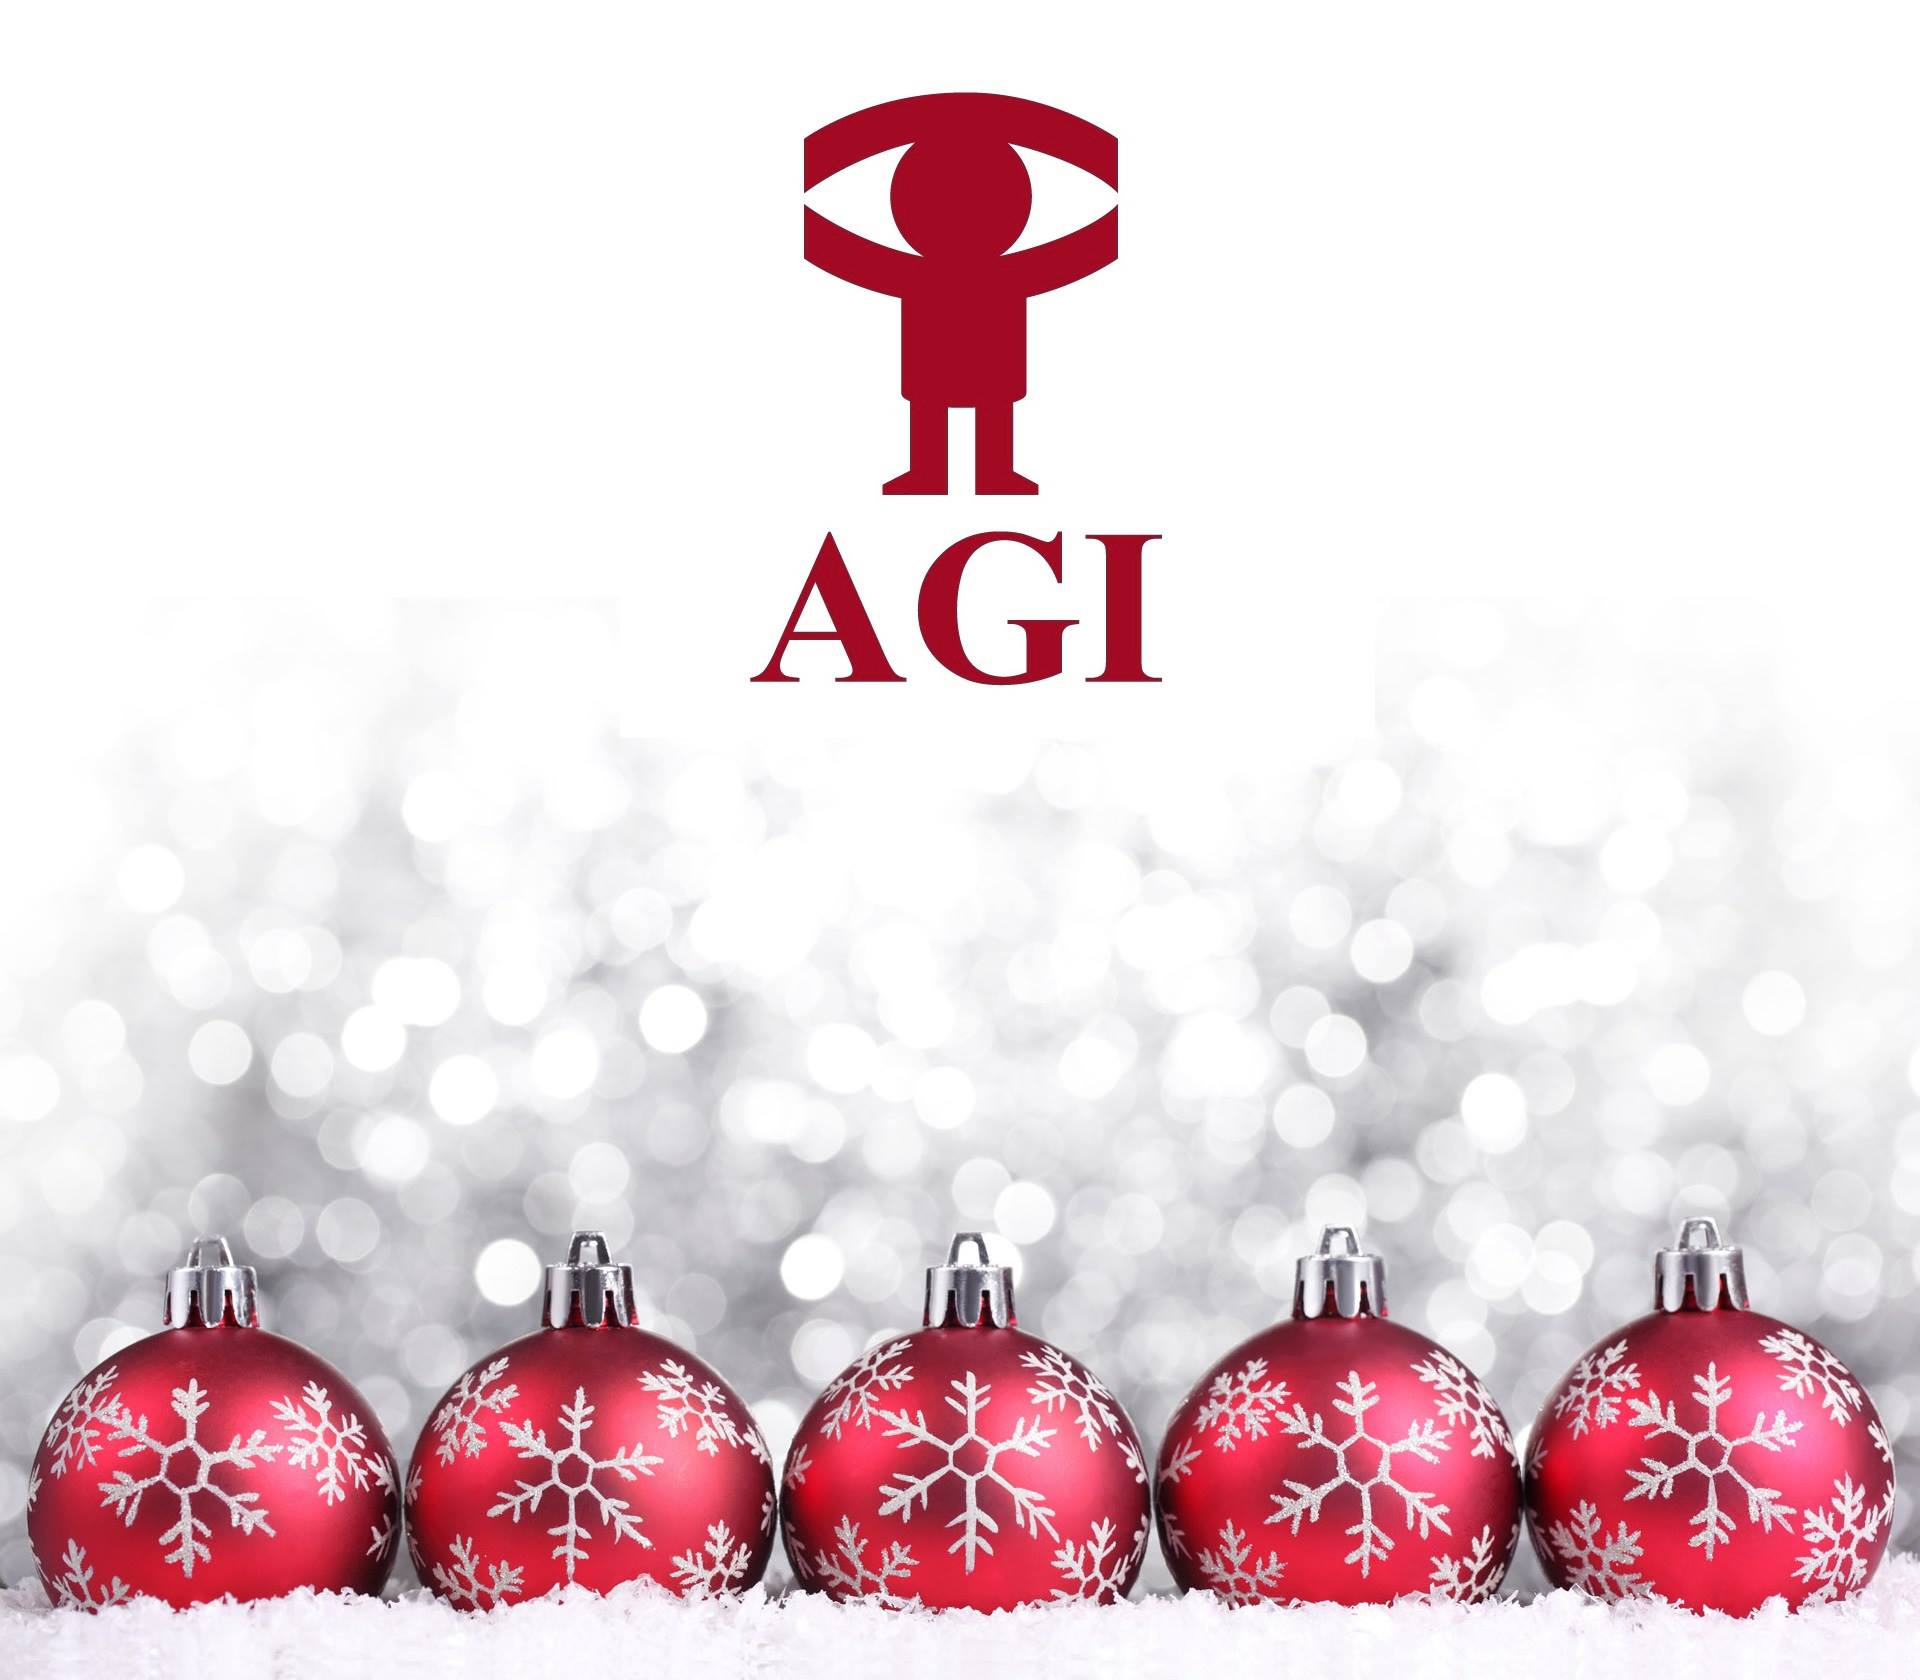 Logo de AGI en rojo con girnaldas navideñas